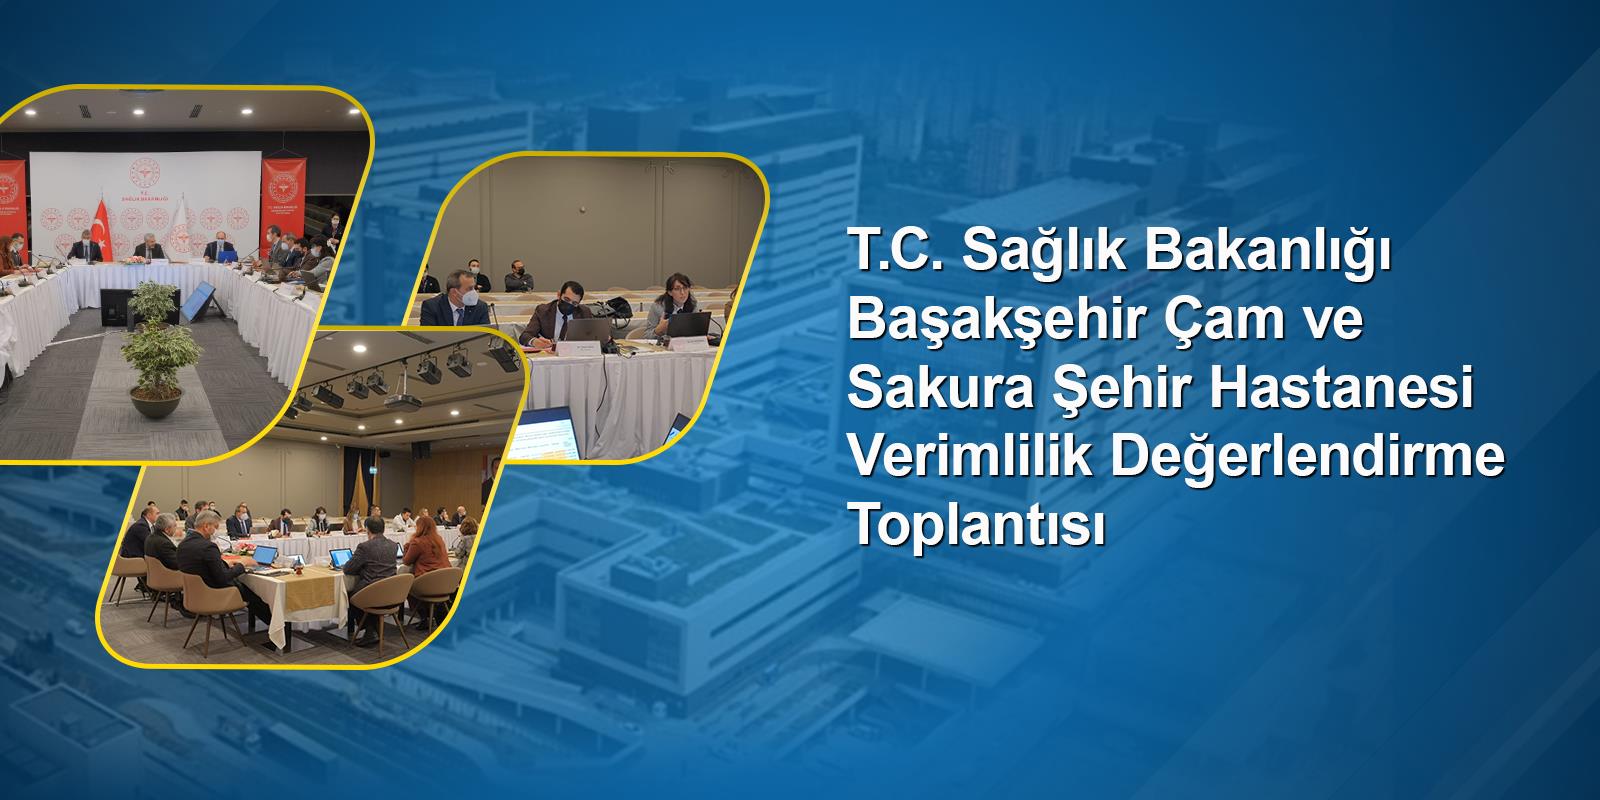 T.C. Sağlık Bakanlığı Başakşehir Çam ve Sakura Şehir Hastanesi Verimlilik Değerlendirme Toplantısı Gerçekleştirildi